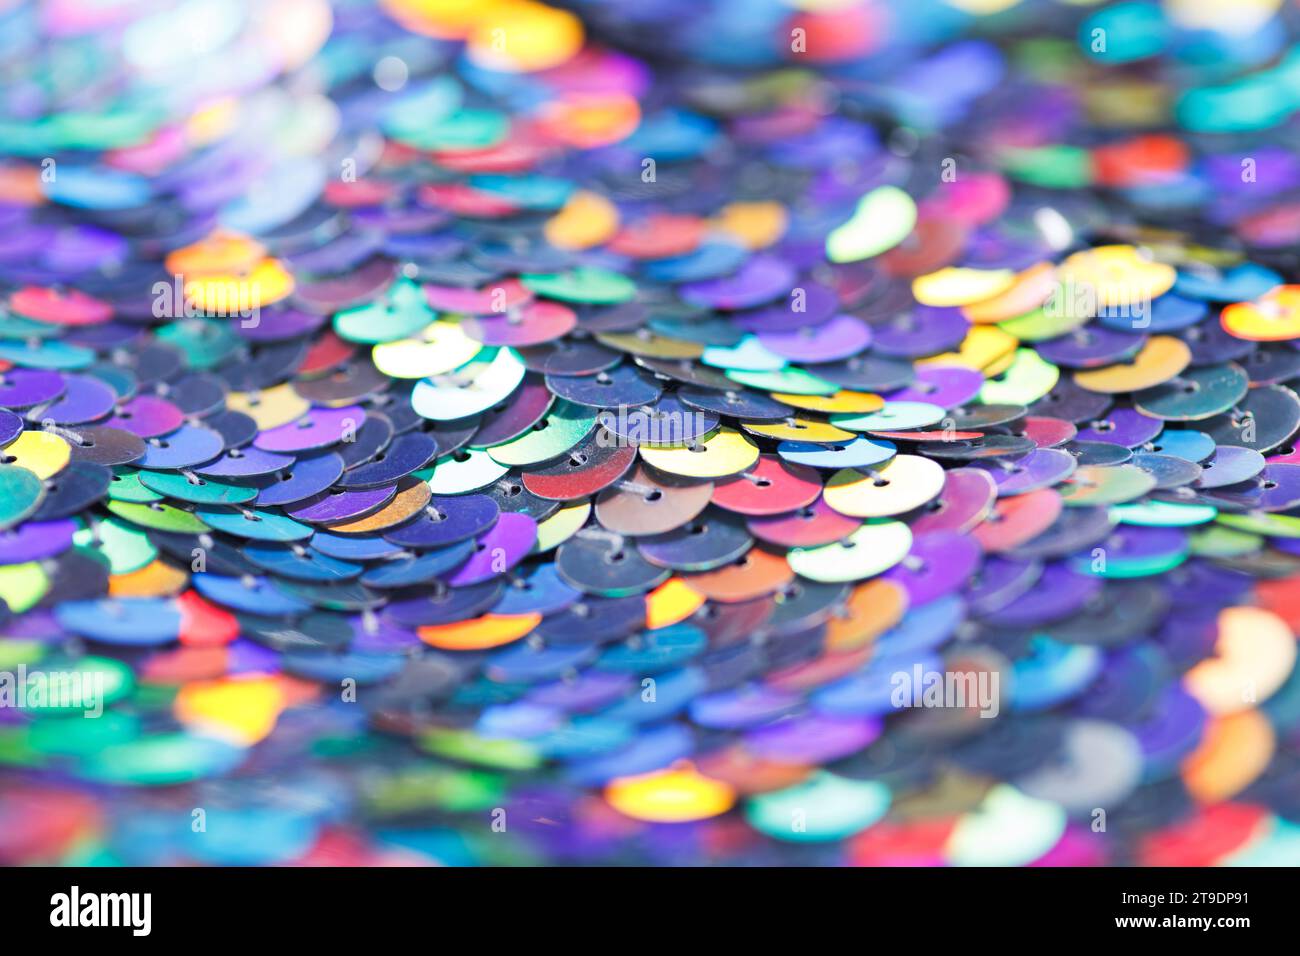 Nahaufnahme eines glänzenden, mehrfarbigen Paillettenmaterials aus miteinander verbundenen bunten Metallkreisen. Stockfoto